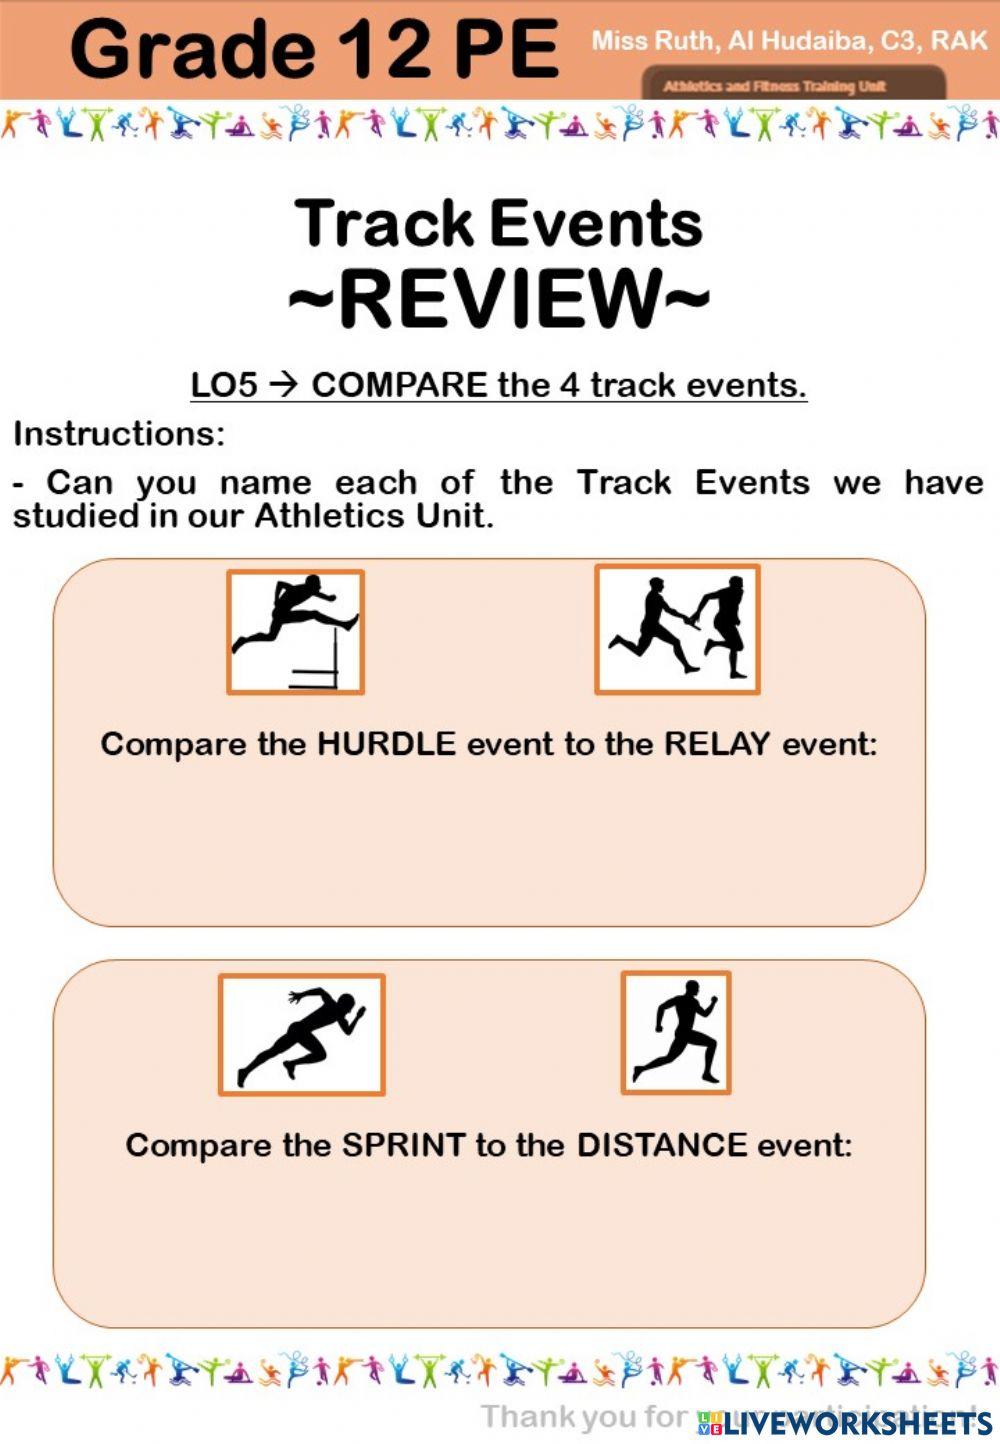 Lesson 06 - LO5 - COMPARE the 4 Track Events